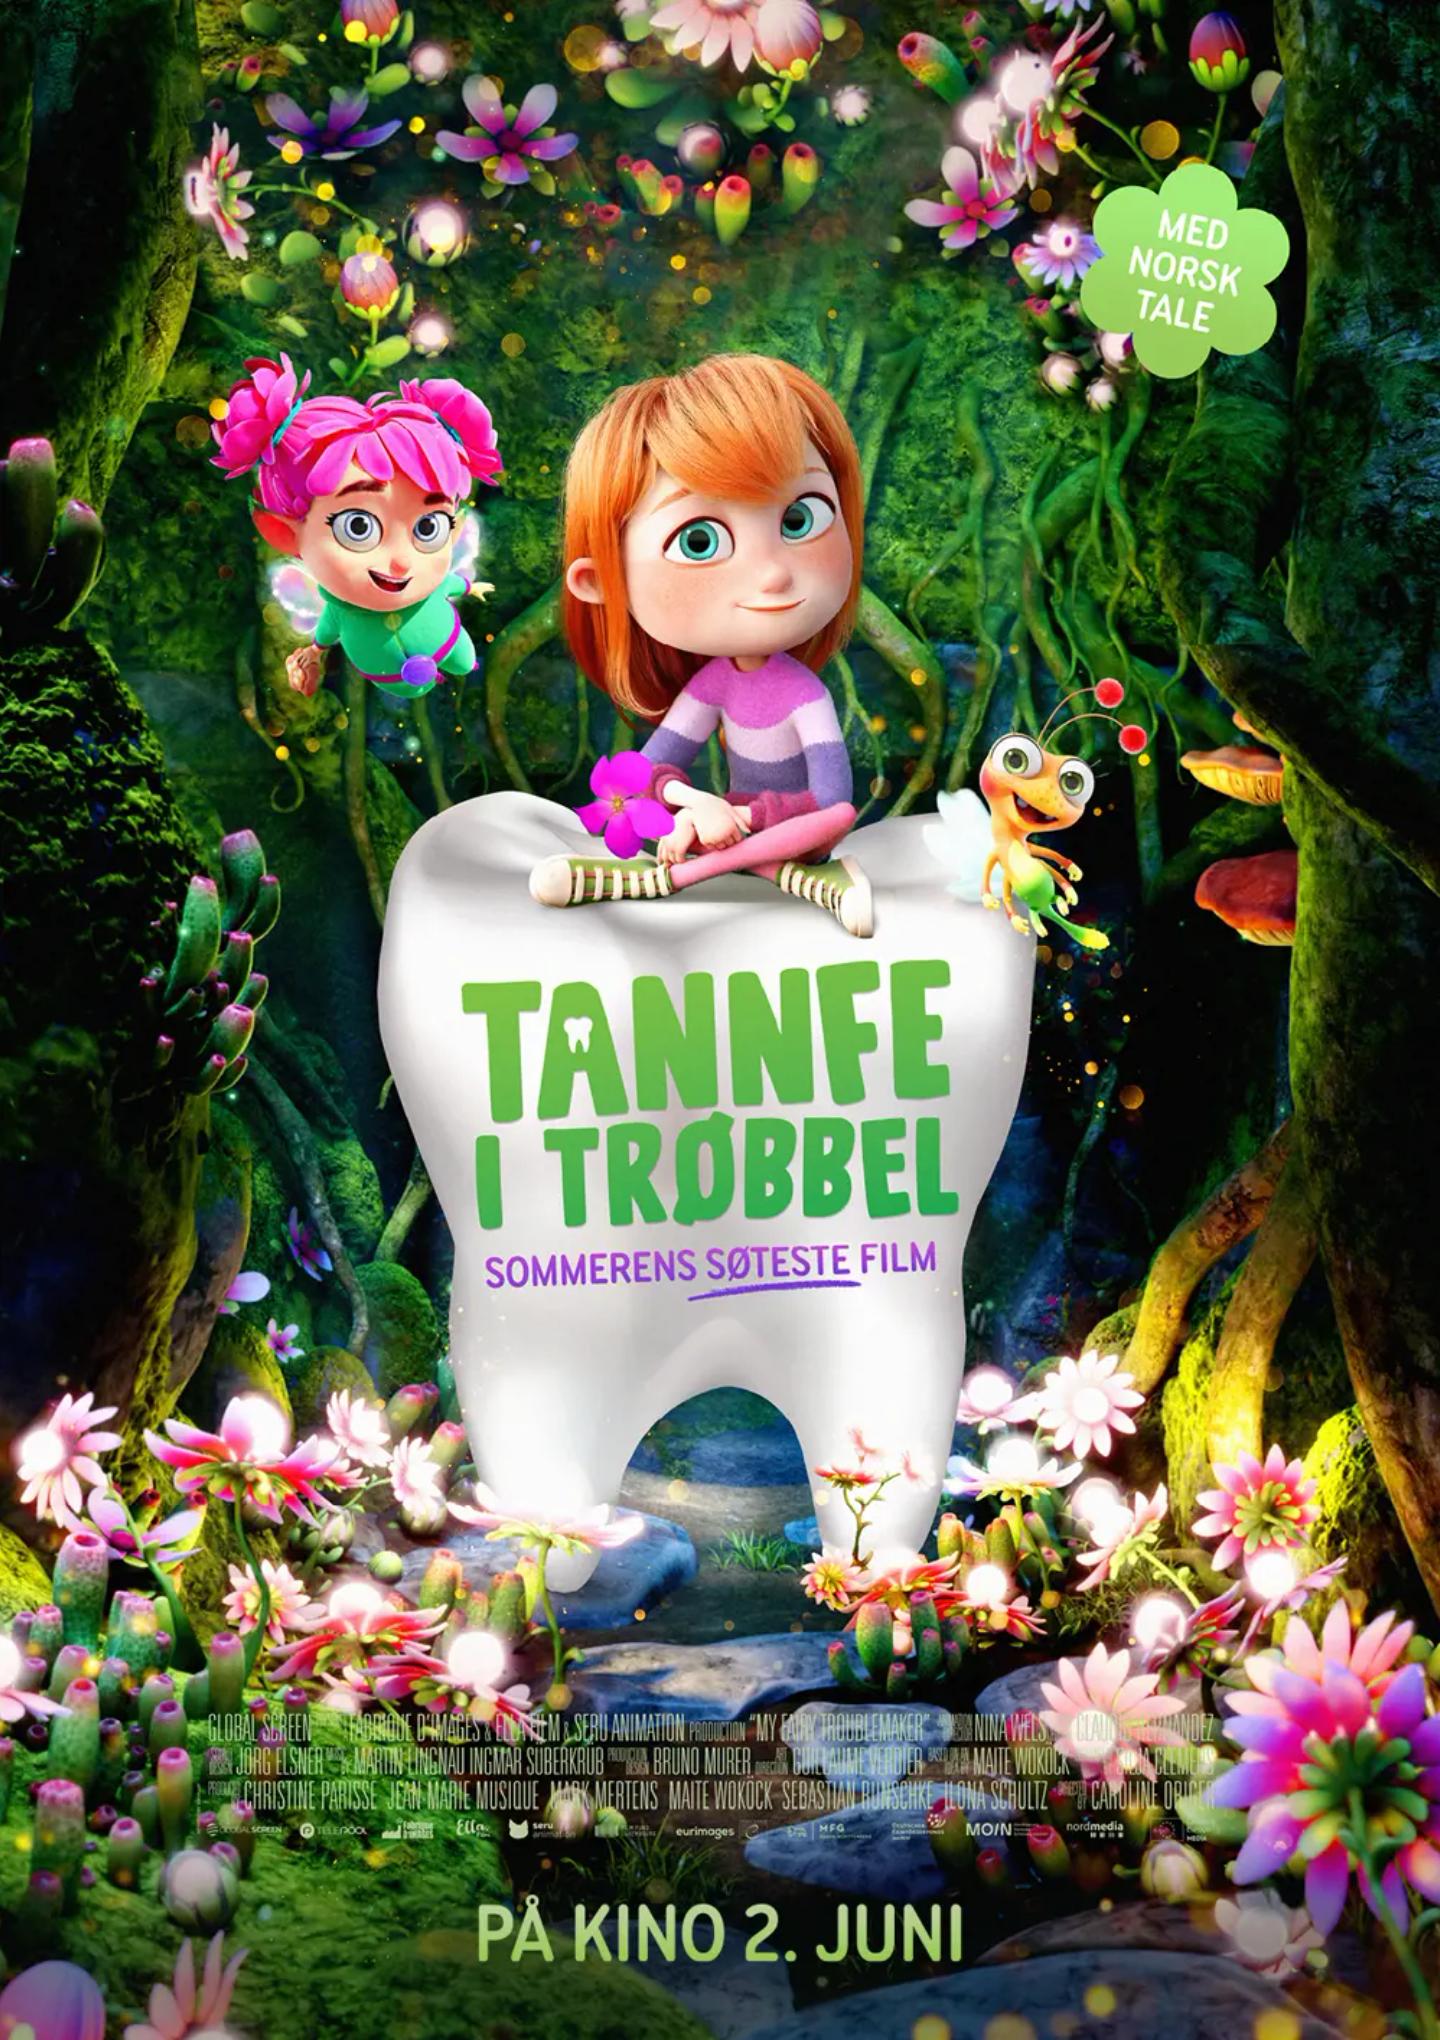 Plakat for 'Tannfe i trøbbel'